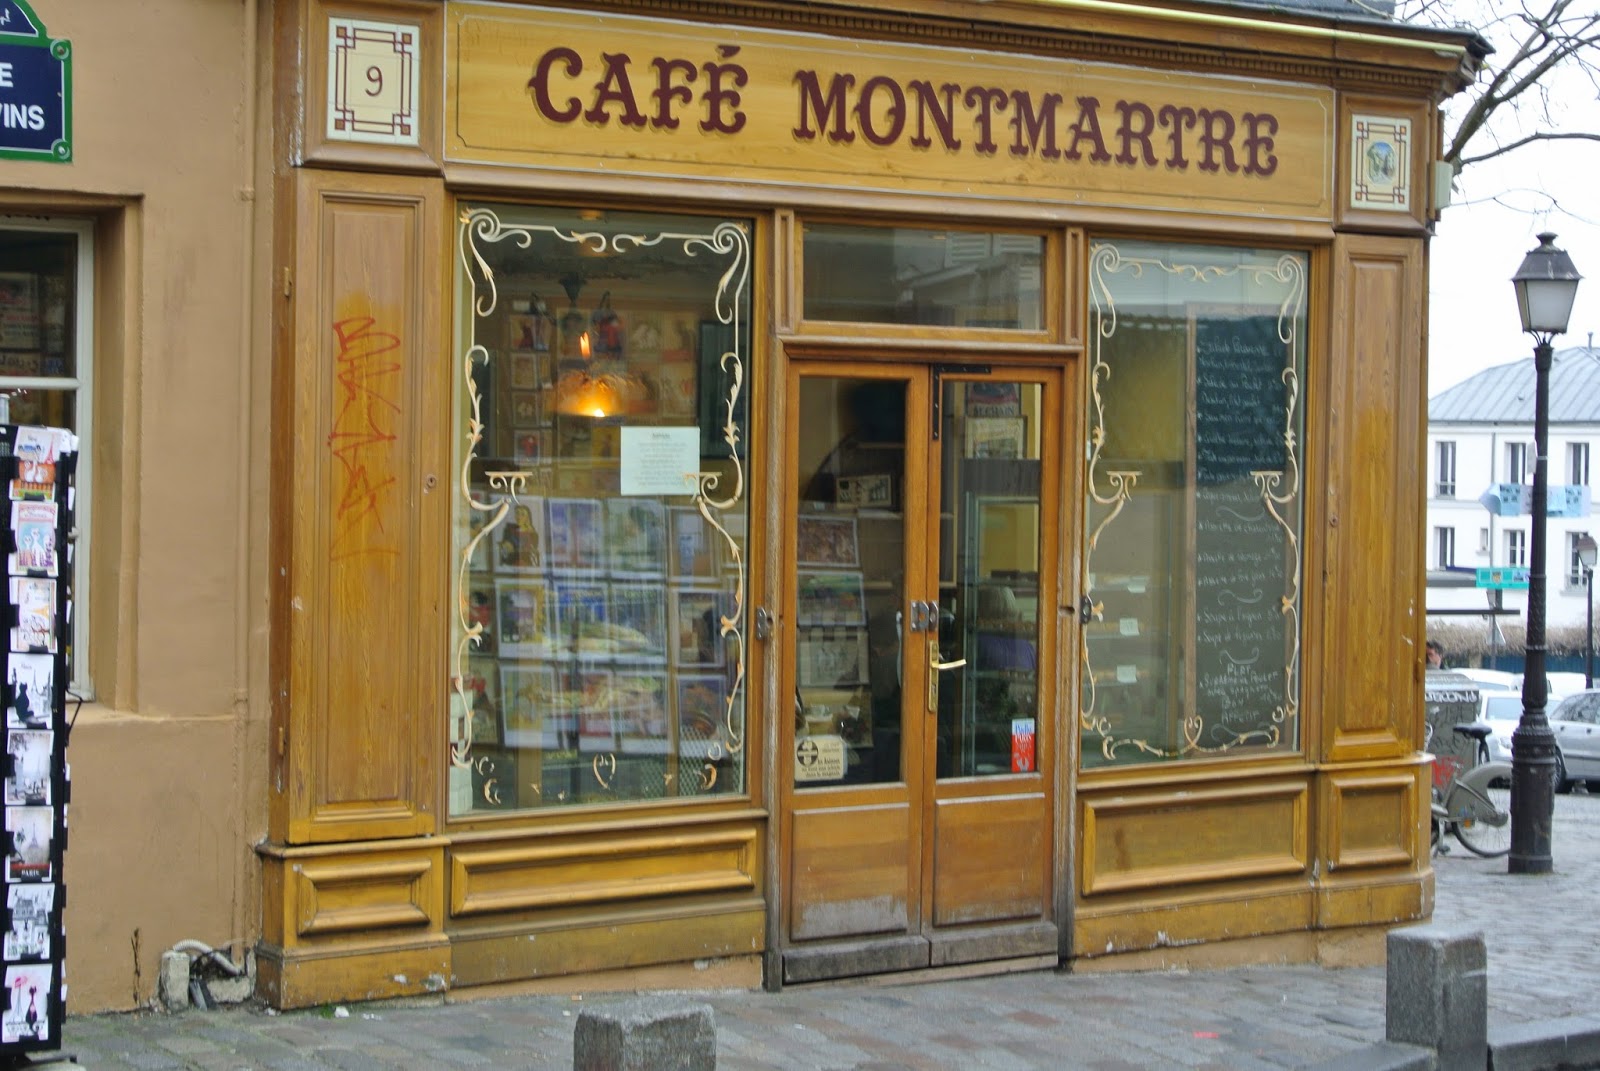 Cafeteria em Montmartre (créditos: Carolina Kelesoglu)